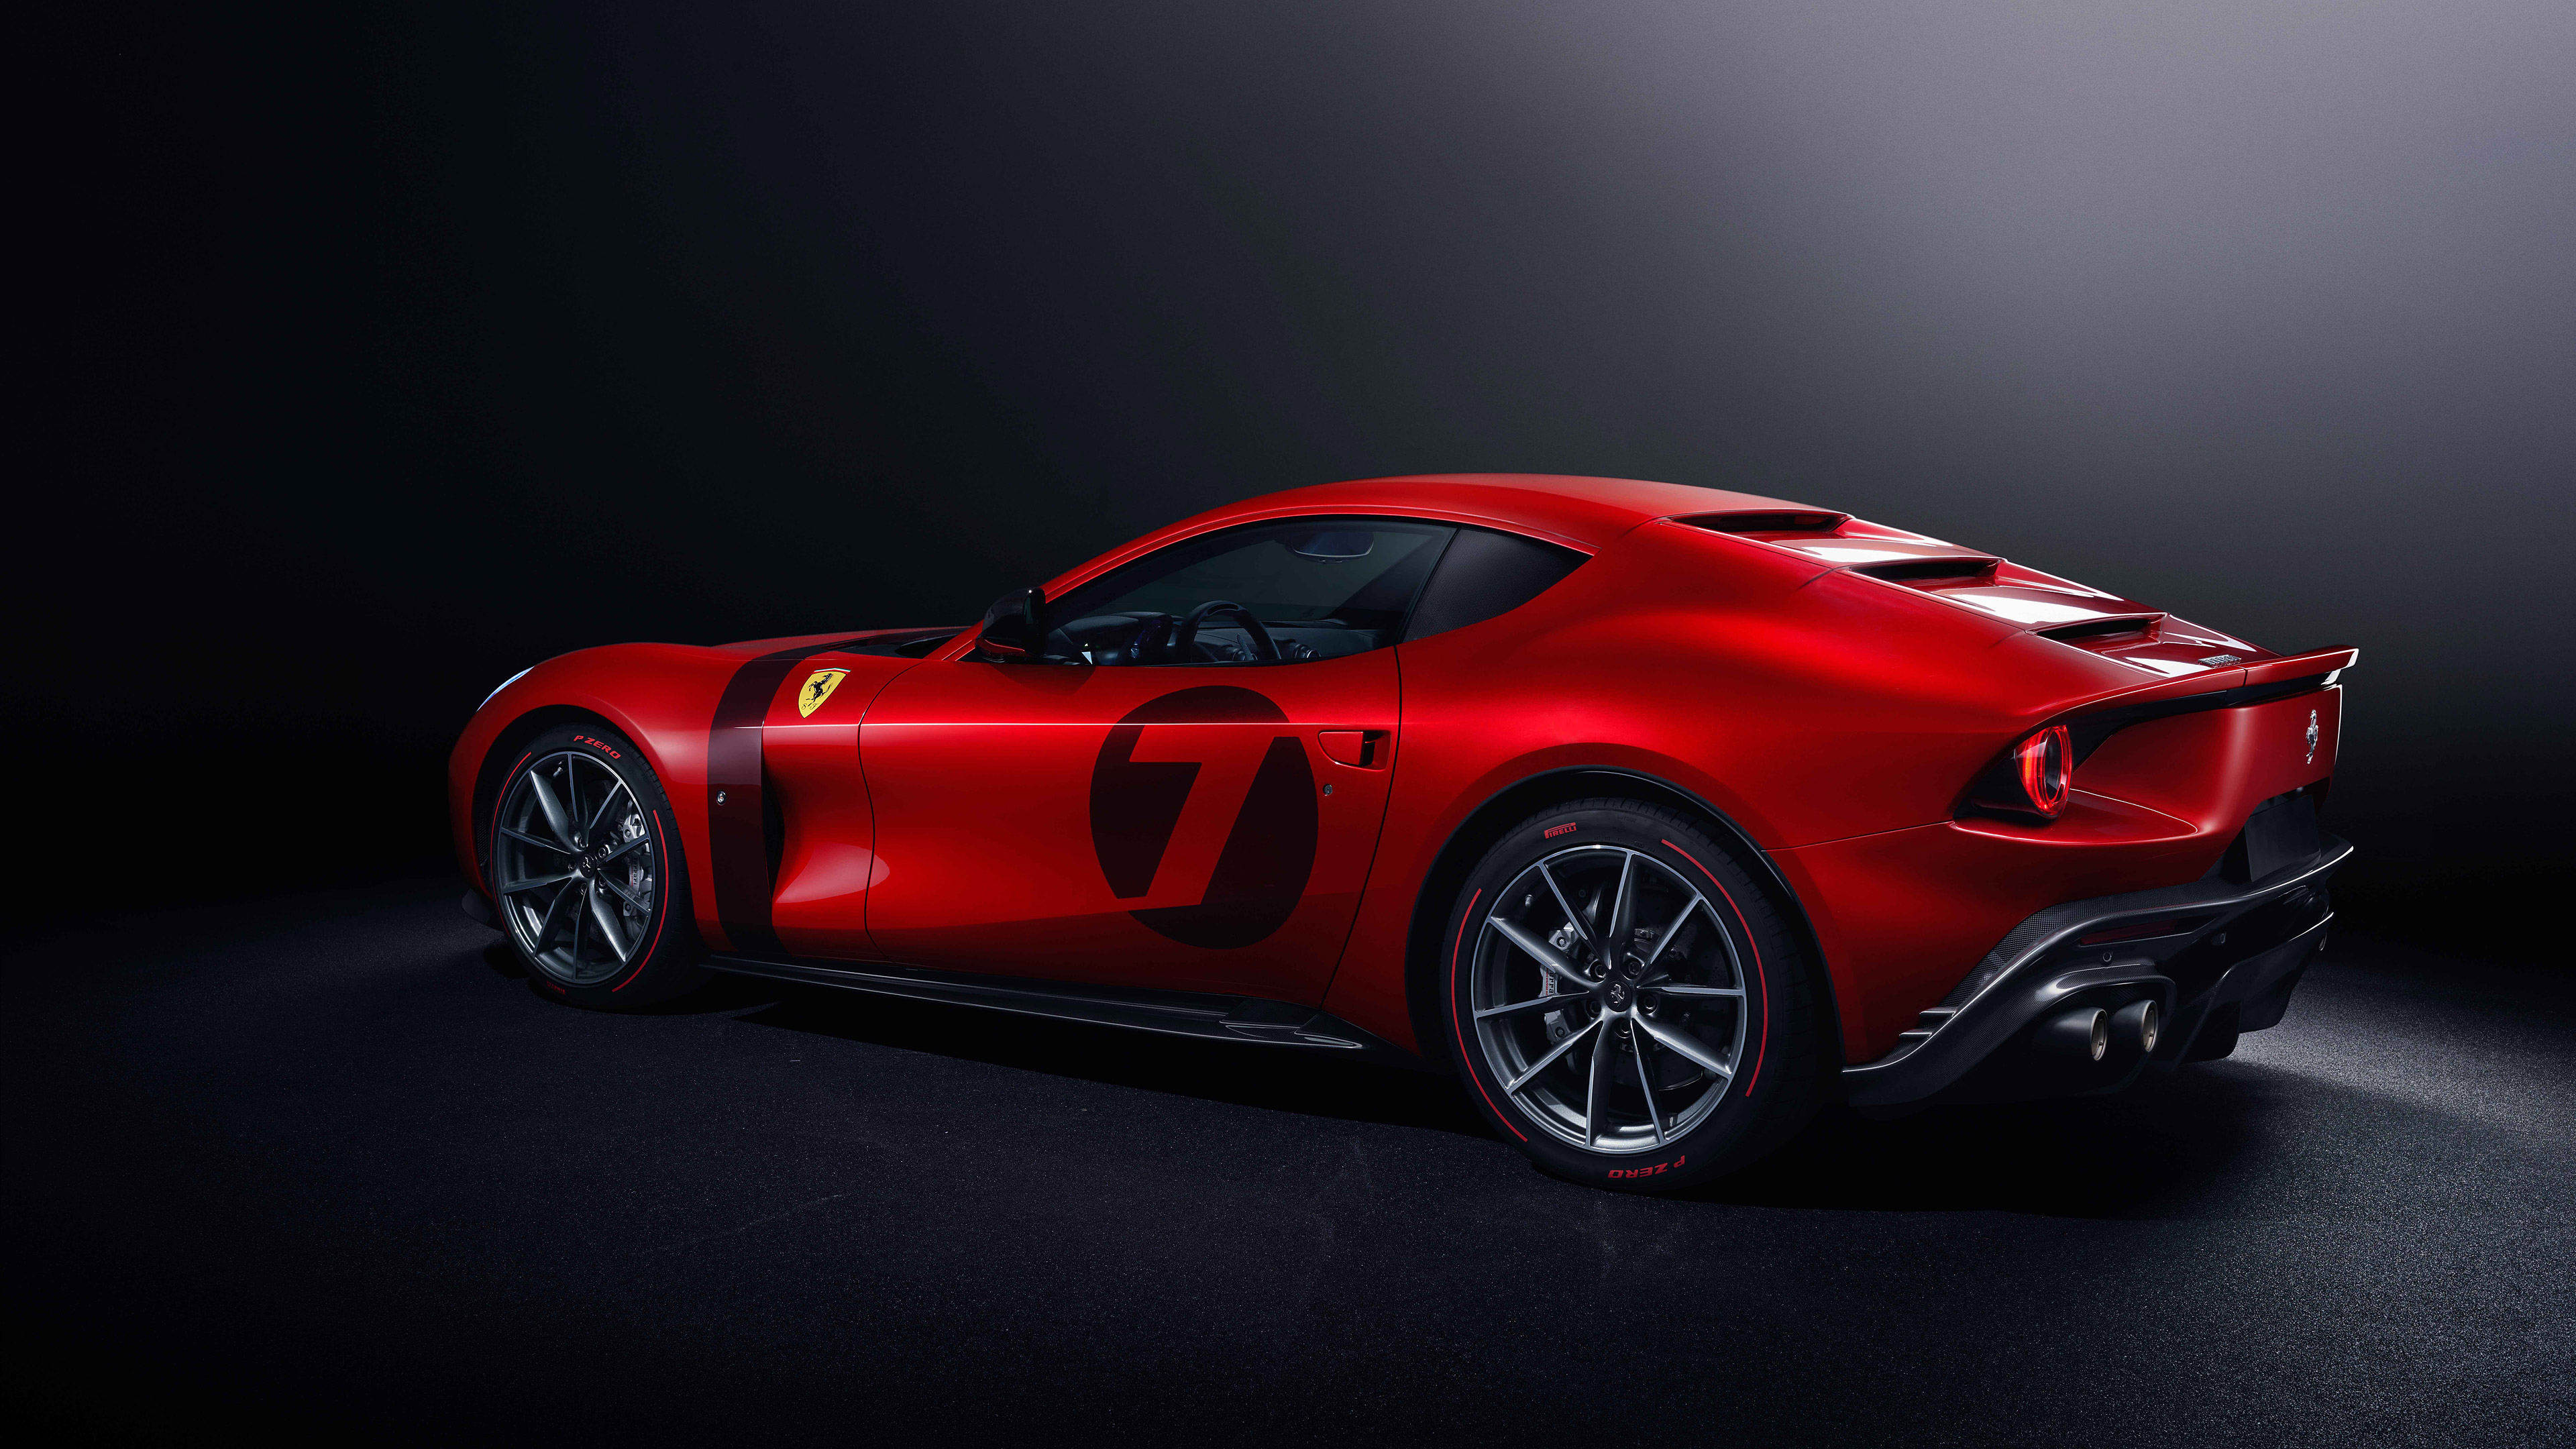 1080p Ferrari Omologata Hd Images